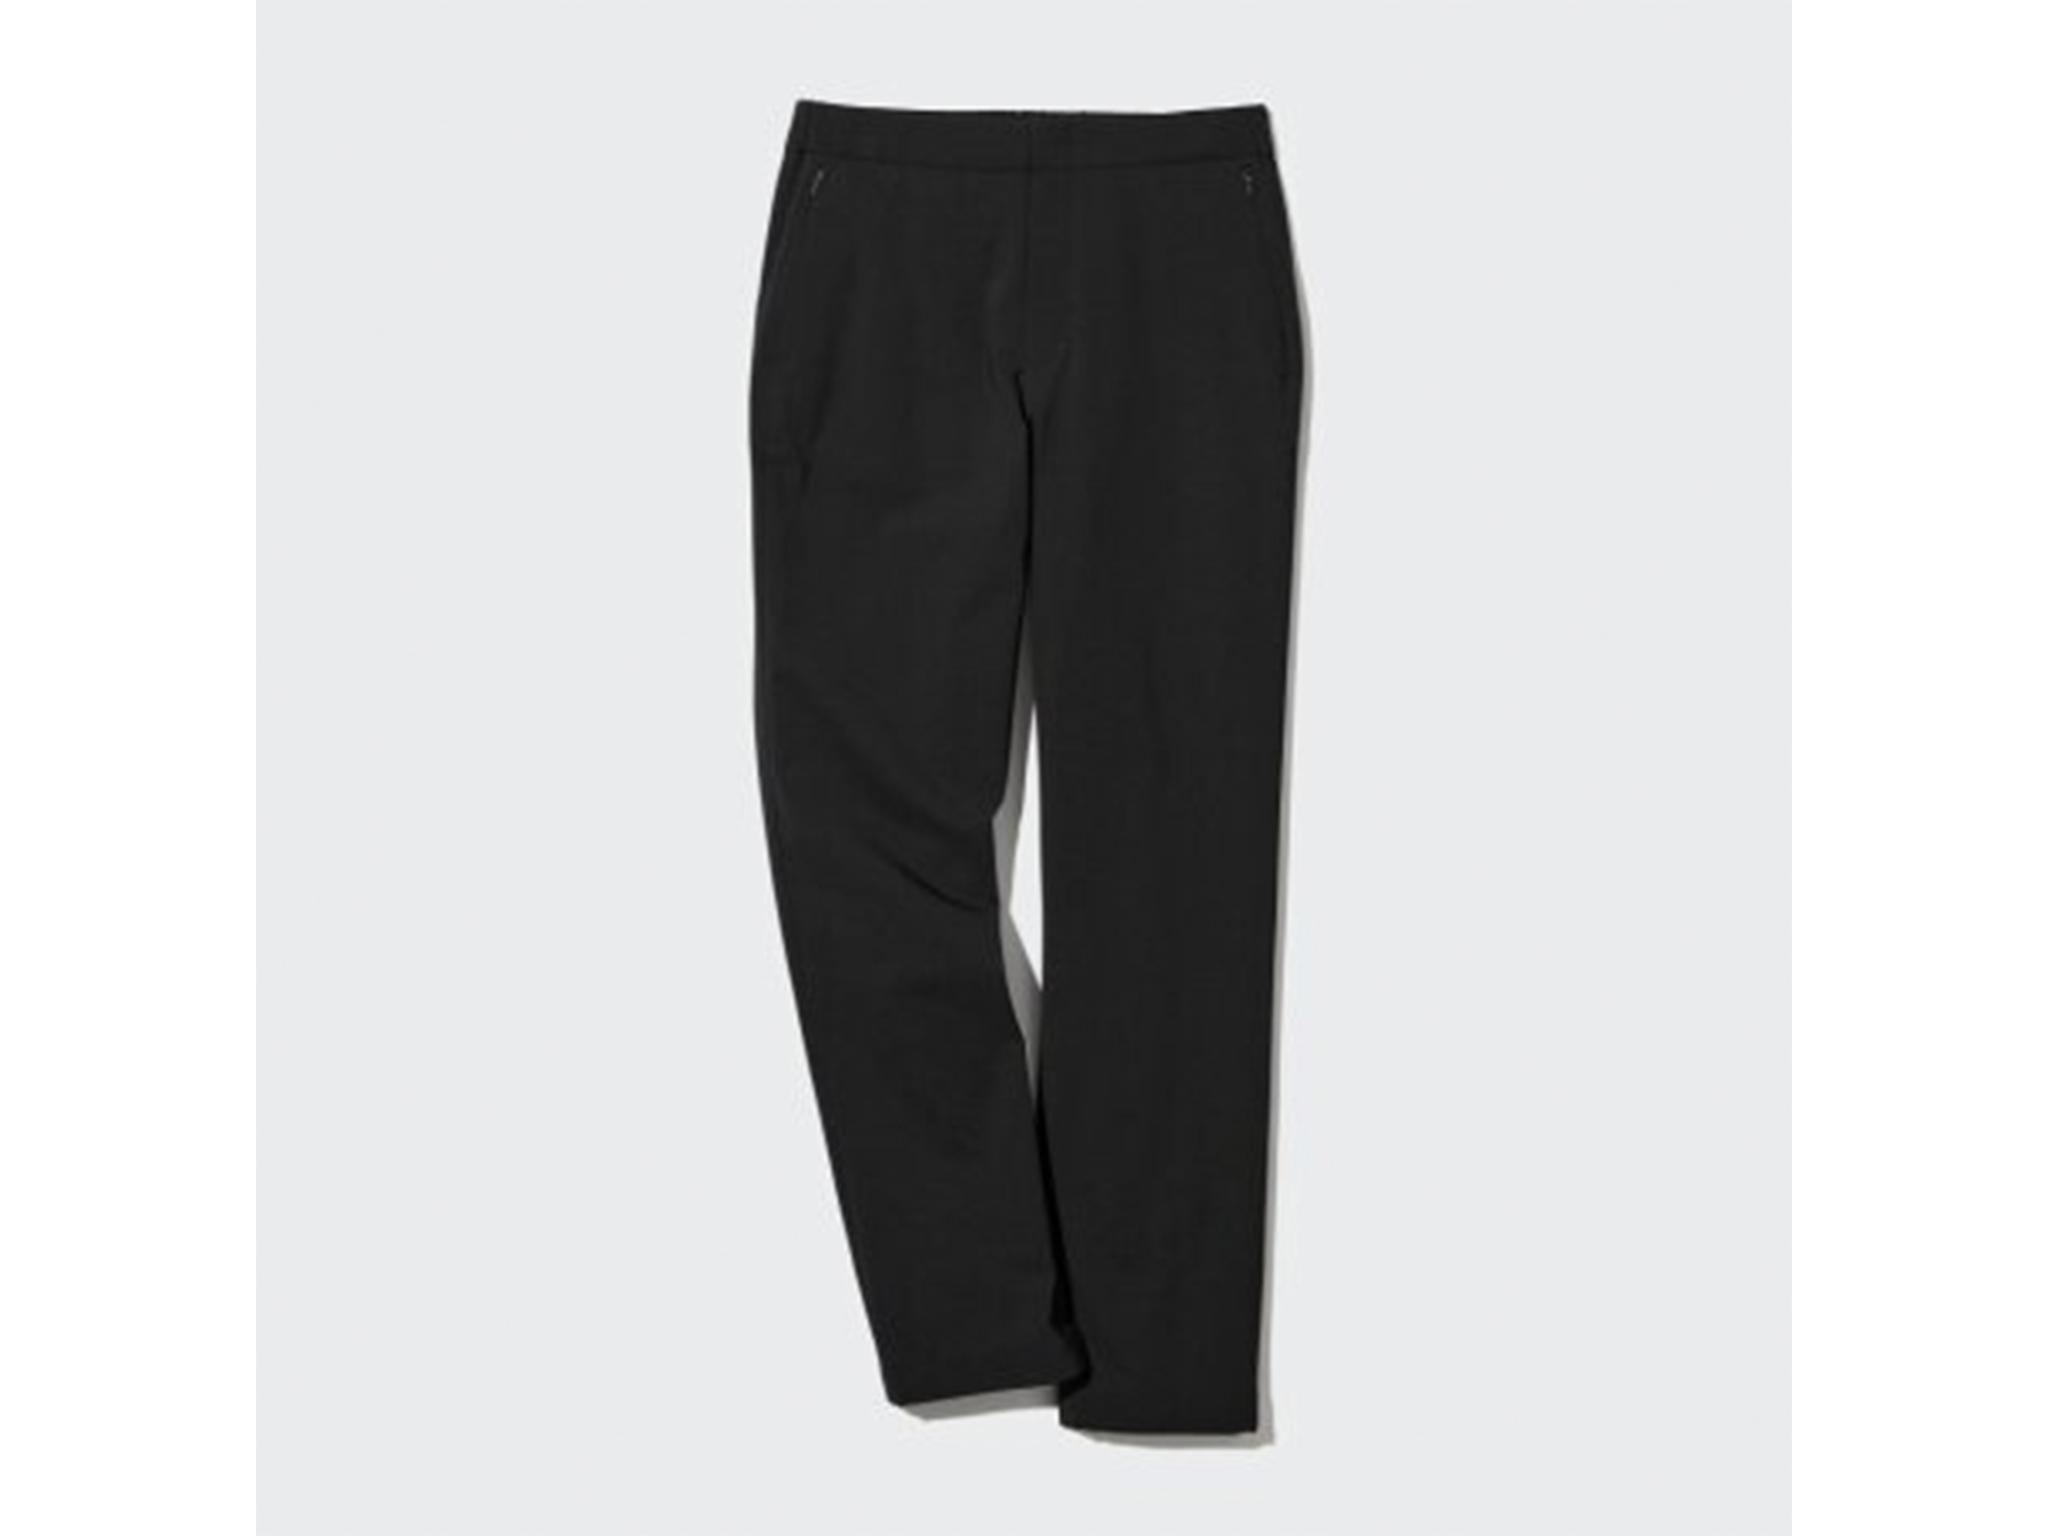 UNIQLO MEN JW Anderson Heattech Warm Lined Pants SIZE M Black $84.00 -  PicClick